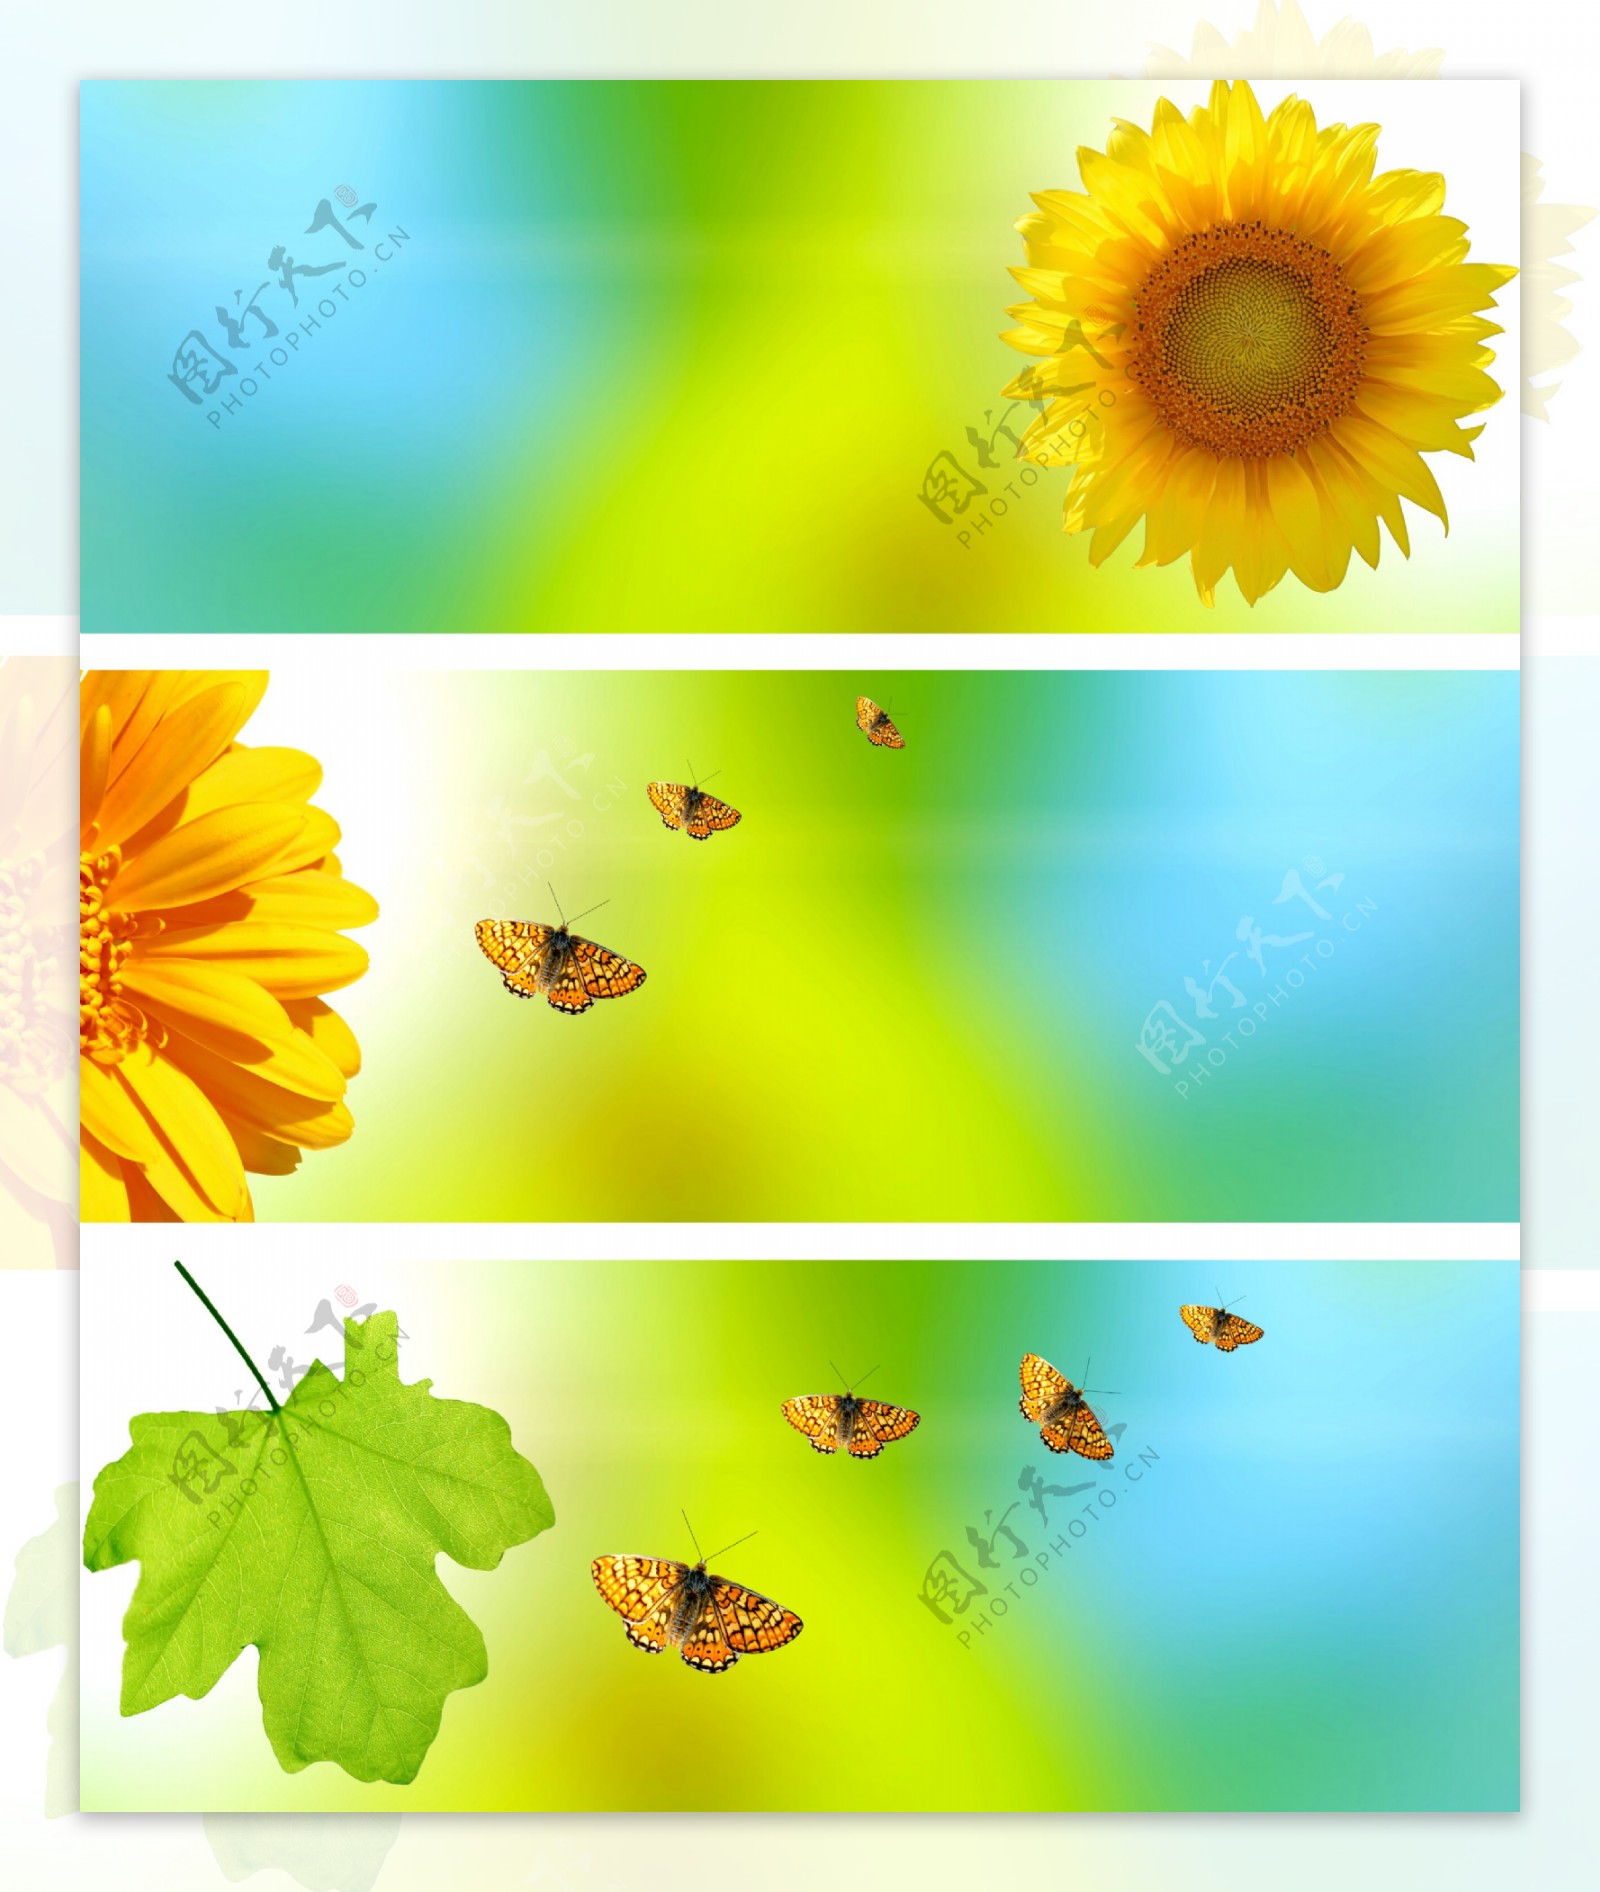 菊花绿叶蝴蝶背景图片图片